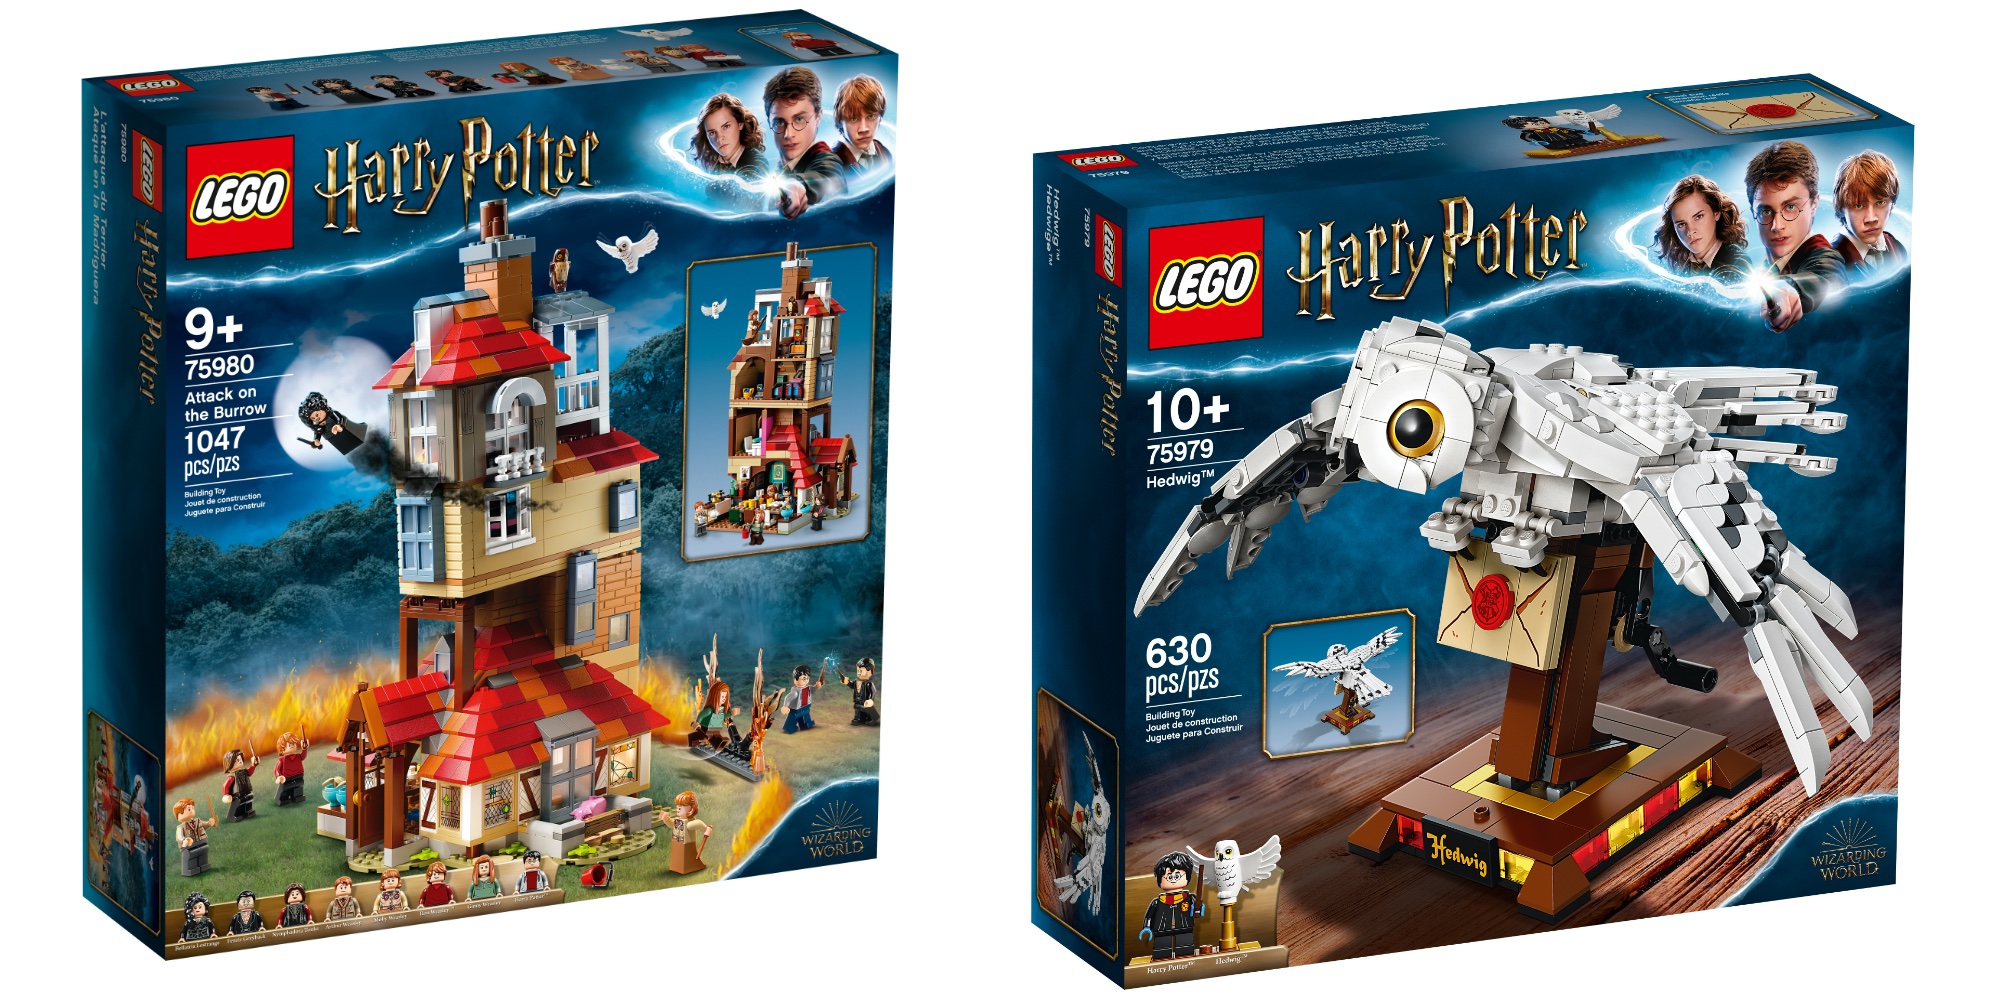 New LEGO Harry Potter Sets Arriving Summer 2020